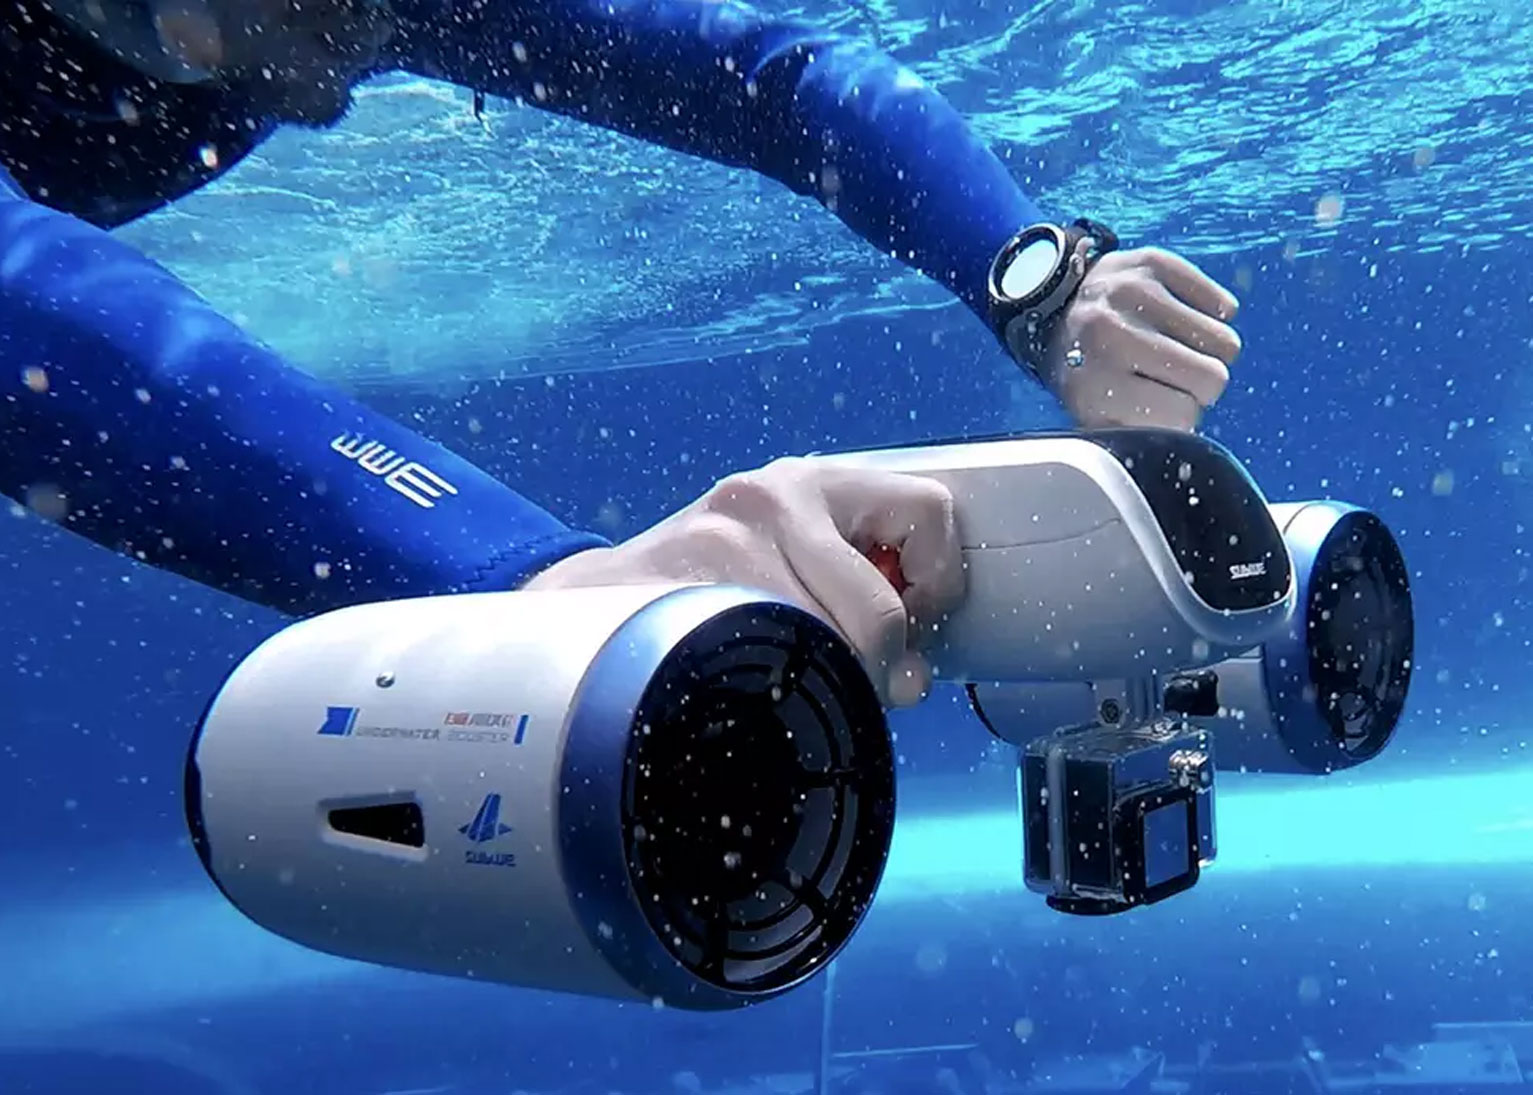 无人机、水下机器人跨界而来的科技创新如何玩转旅游场景?_搜狐旅游_搜狐网